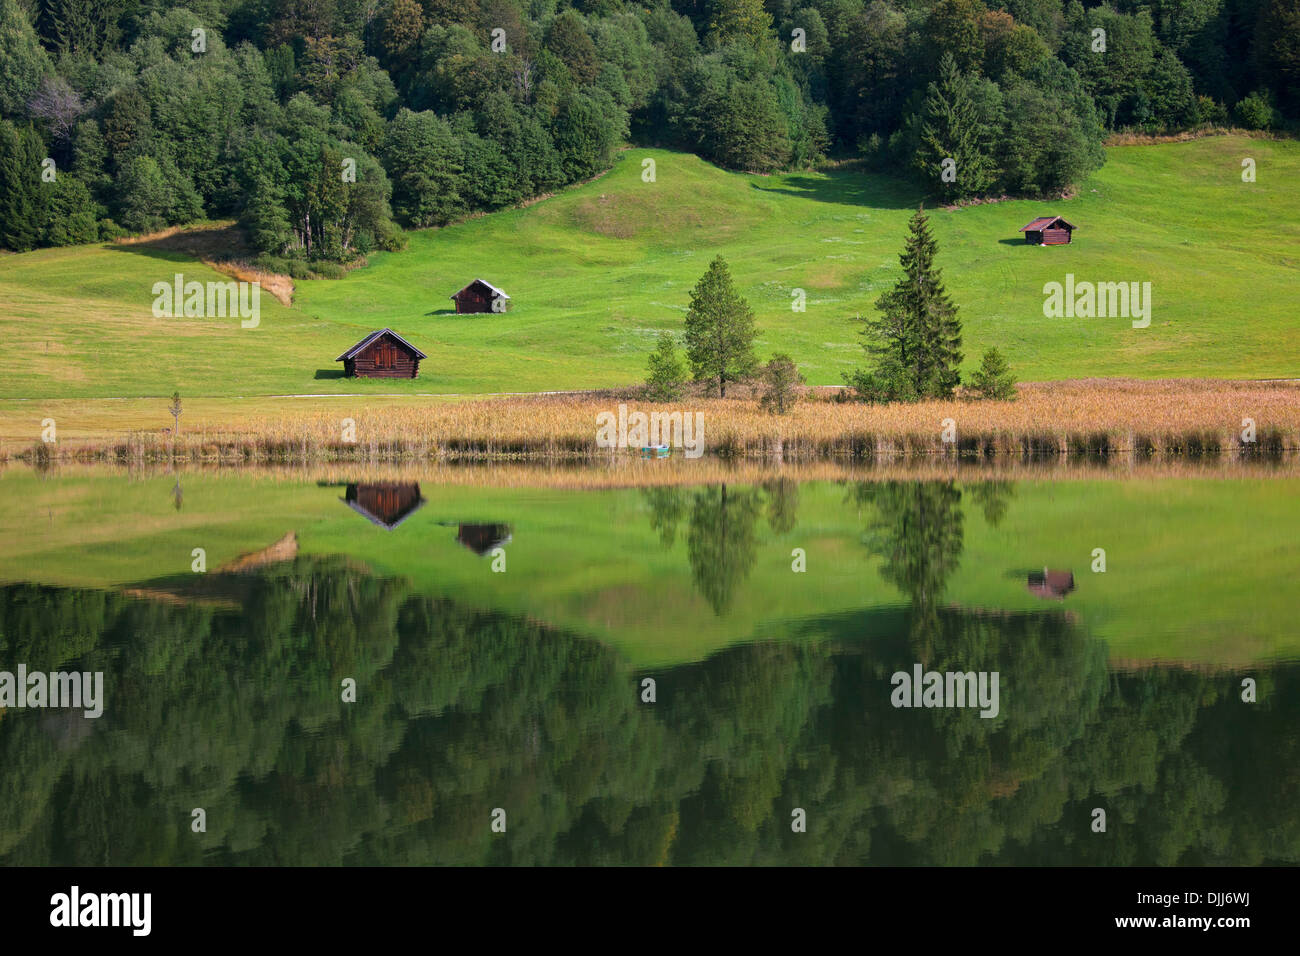 Huttes de bois et de réflexion de l'eau dans la forêt de pins le long du lac Gerold / Geroldsee près de Mittenwald, Haute-Bavière, Allemagne Banque D'Images